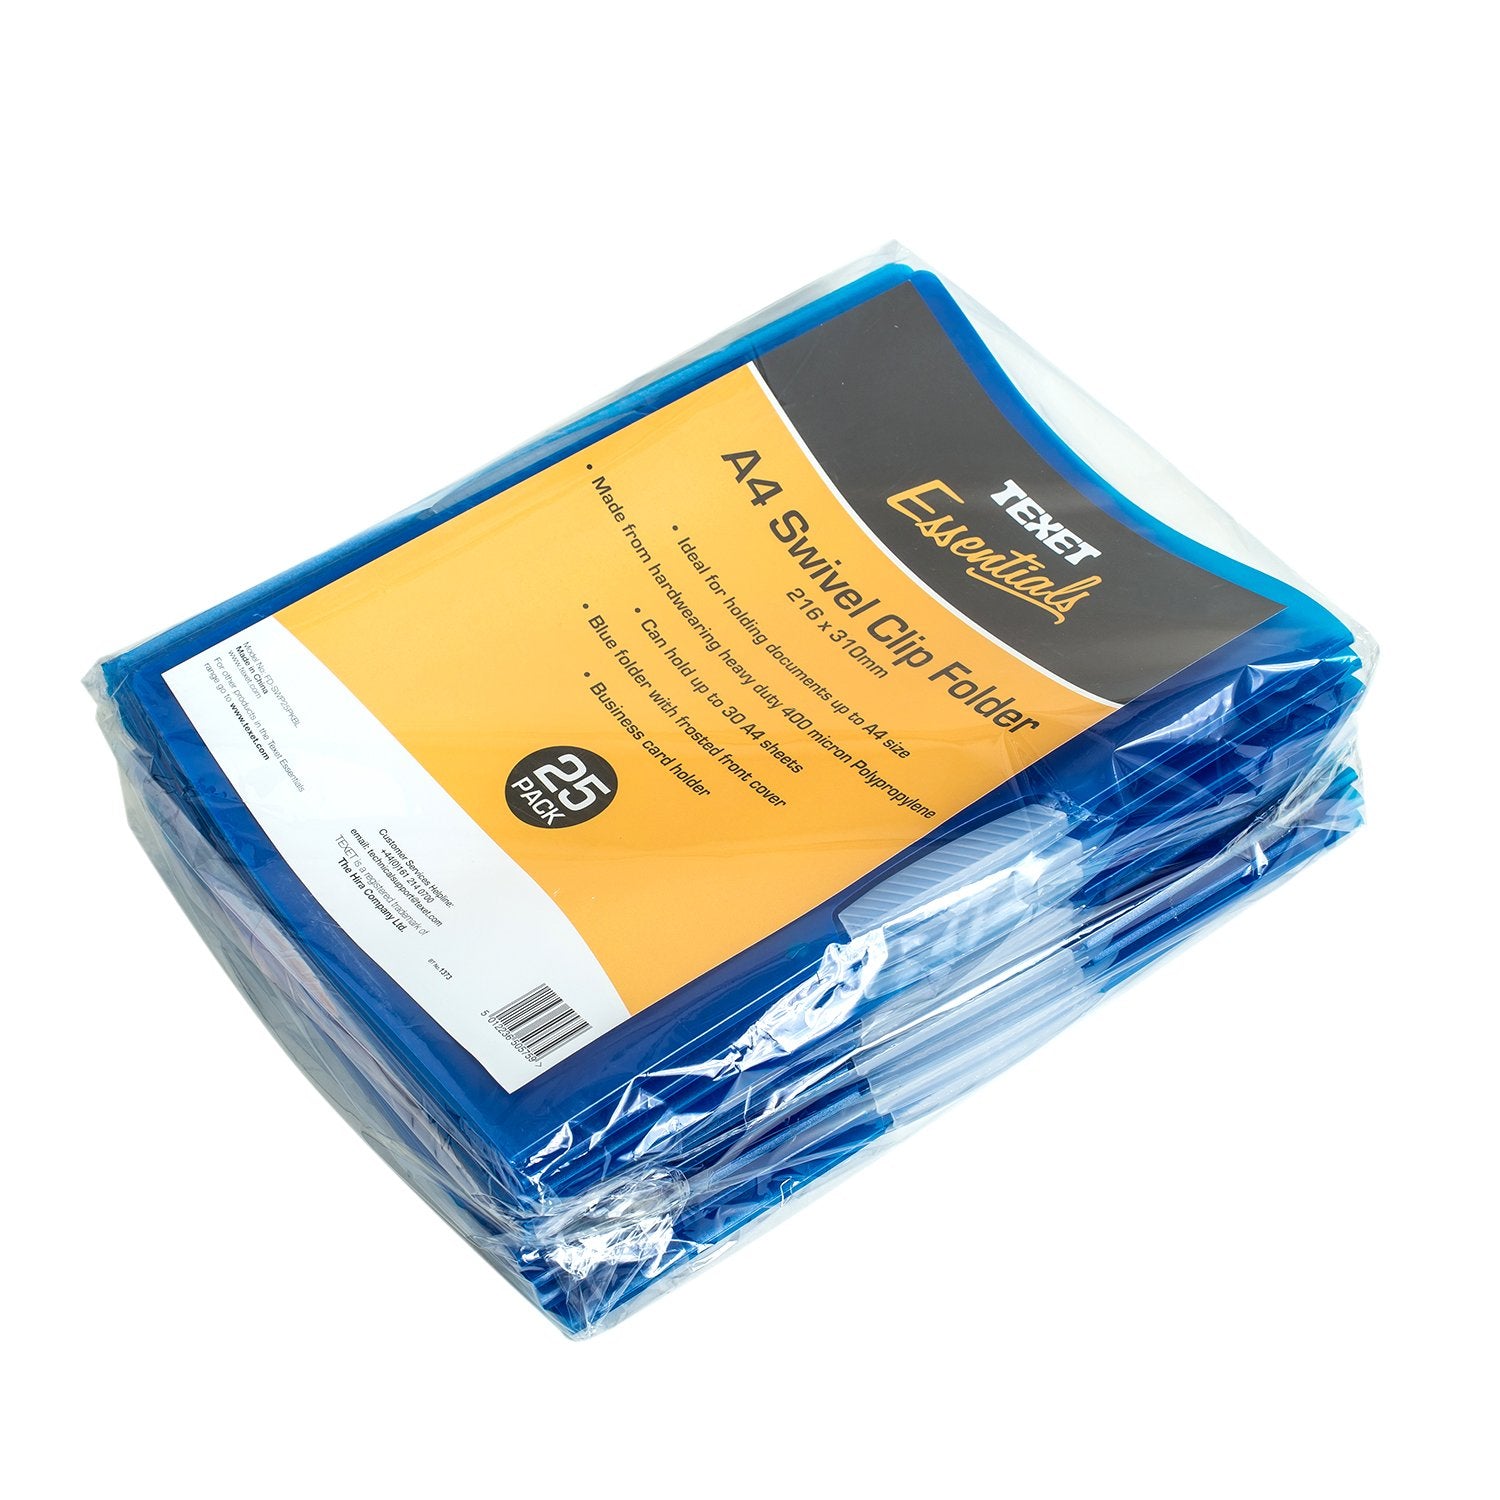 A4 Swivel Clip Folders Blue PK25